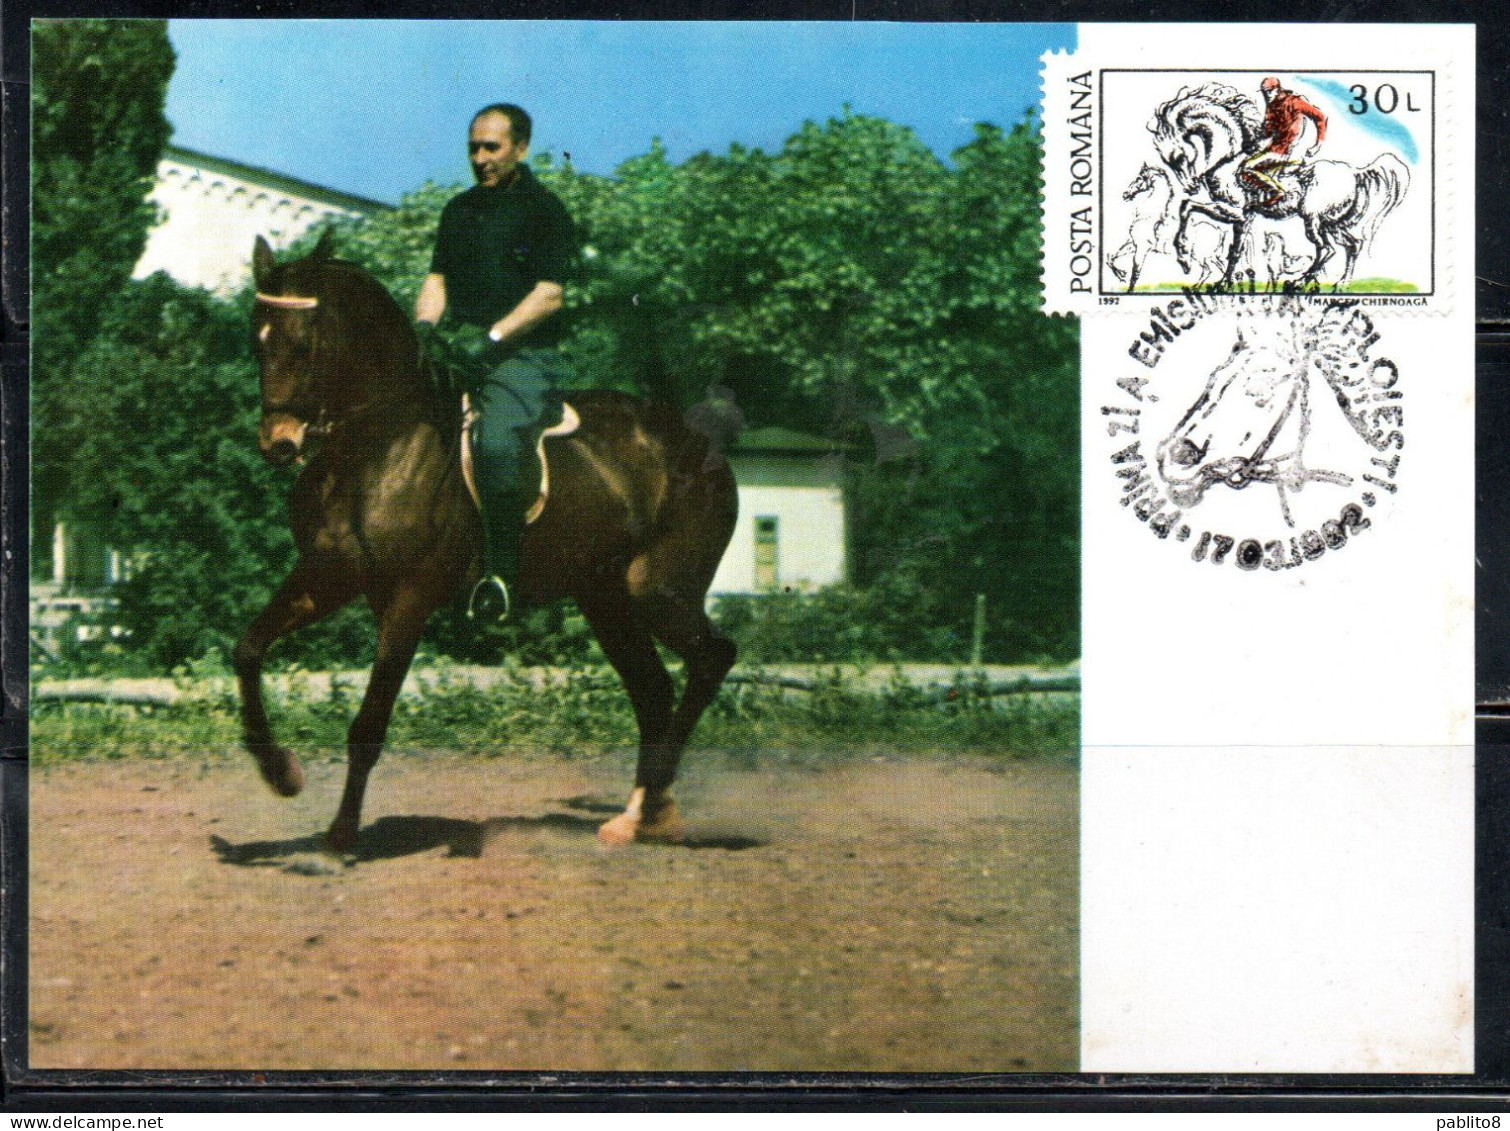 ROMANIA 1992 HORSES 30L MAXI MAXIMUM CARD - Maximum Cards & Covers